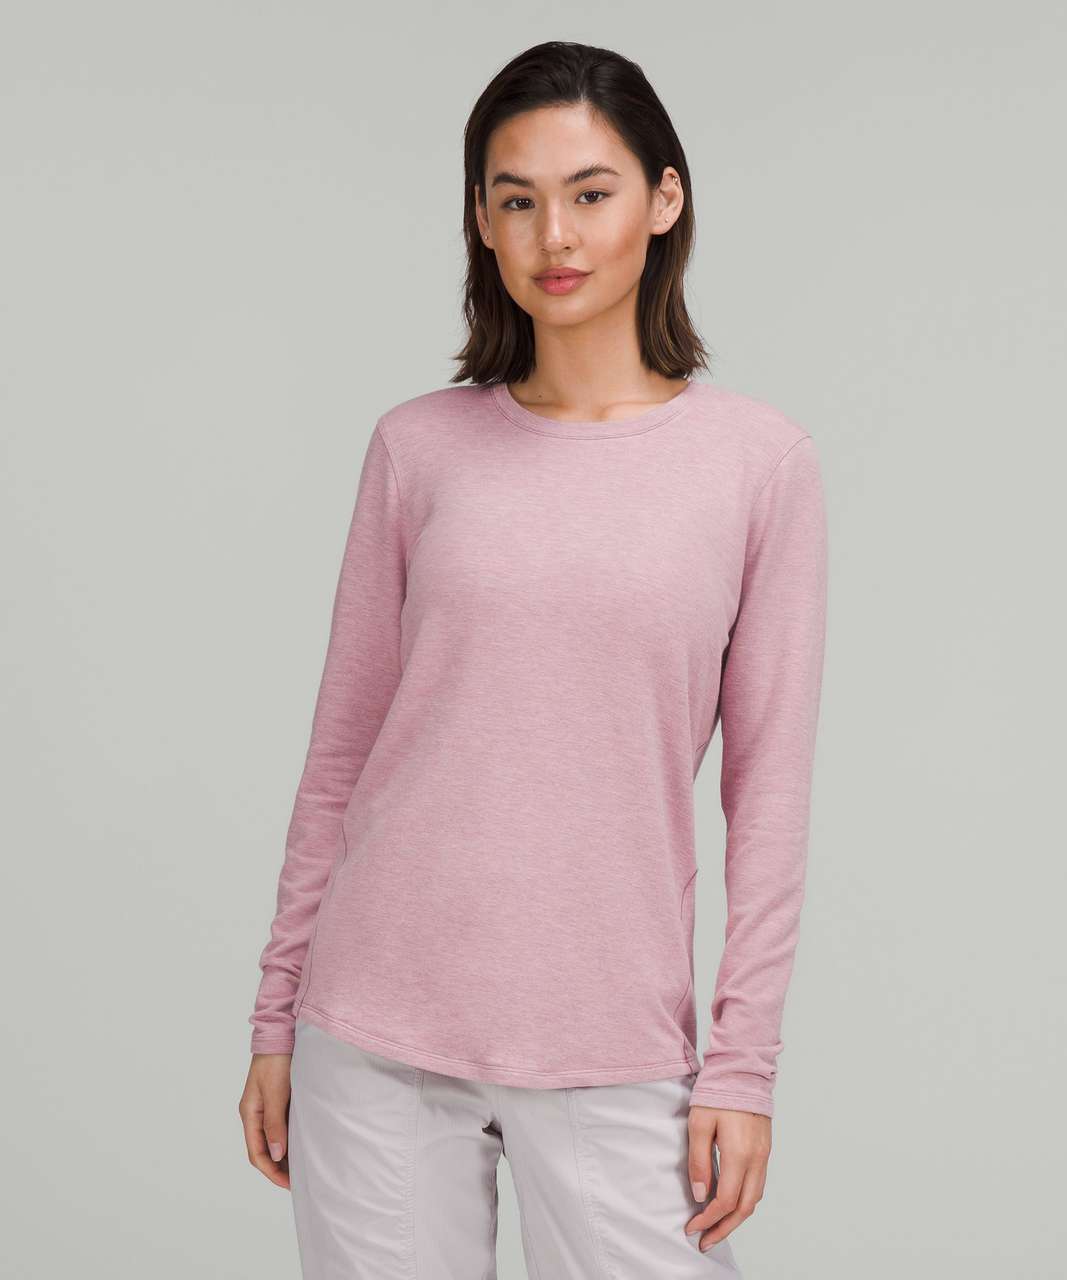 Lululemon Ever Ready Long Sleeve Shirt - Heathered Pink Taupe